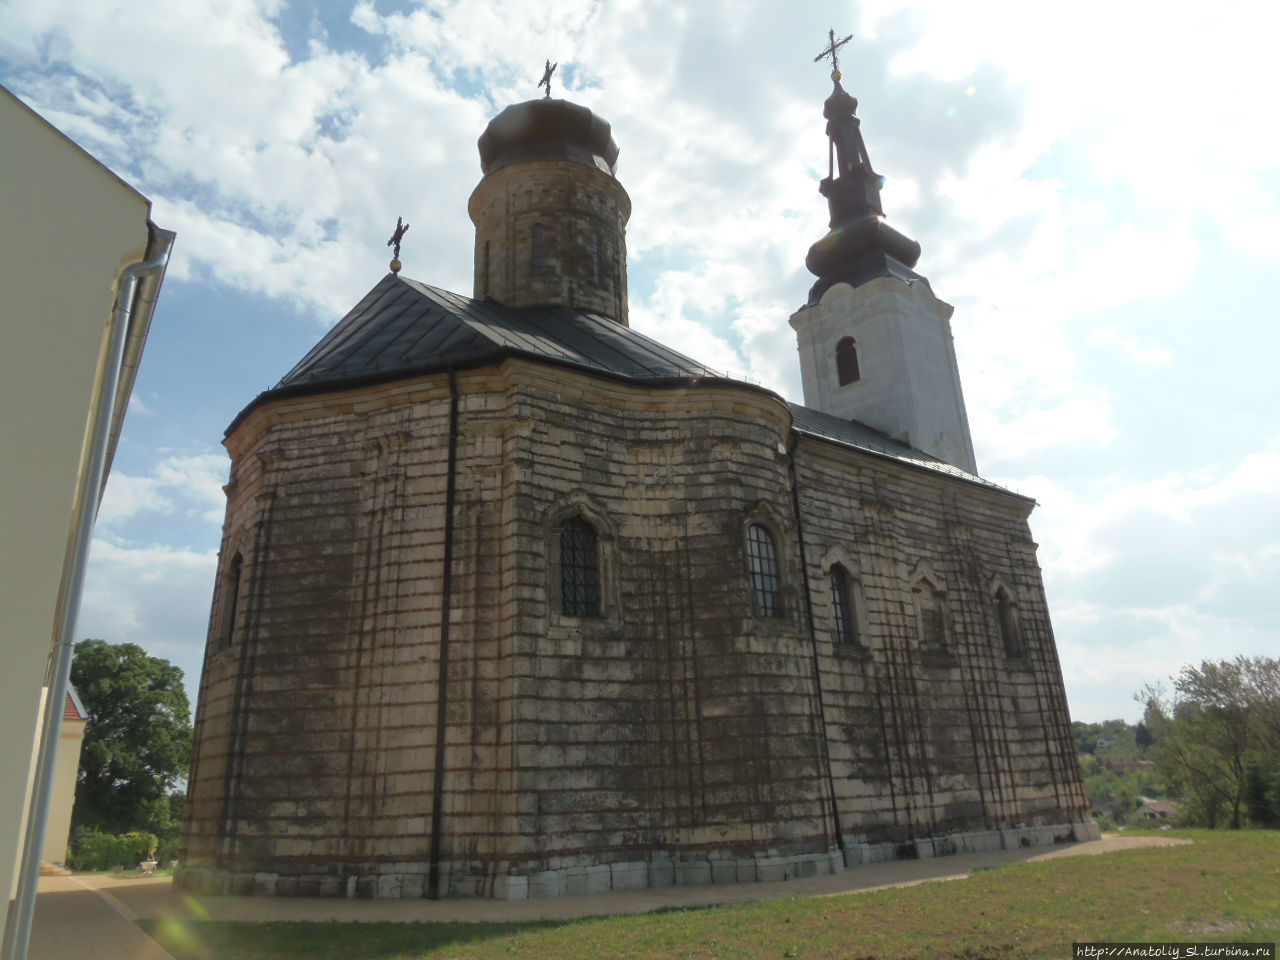 Фрушка гора. Часть 9. Монастырь Шишатовац. Фрушка-Гора Национальный парк, Сербия